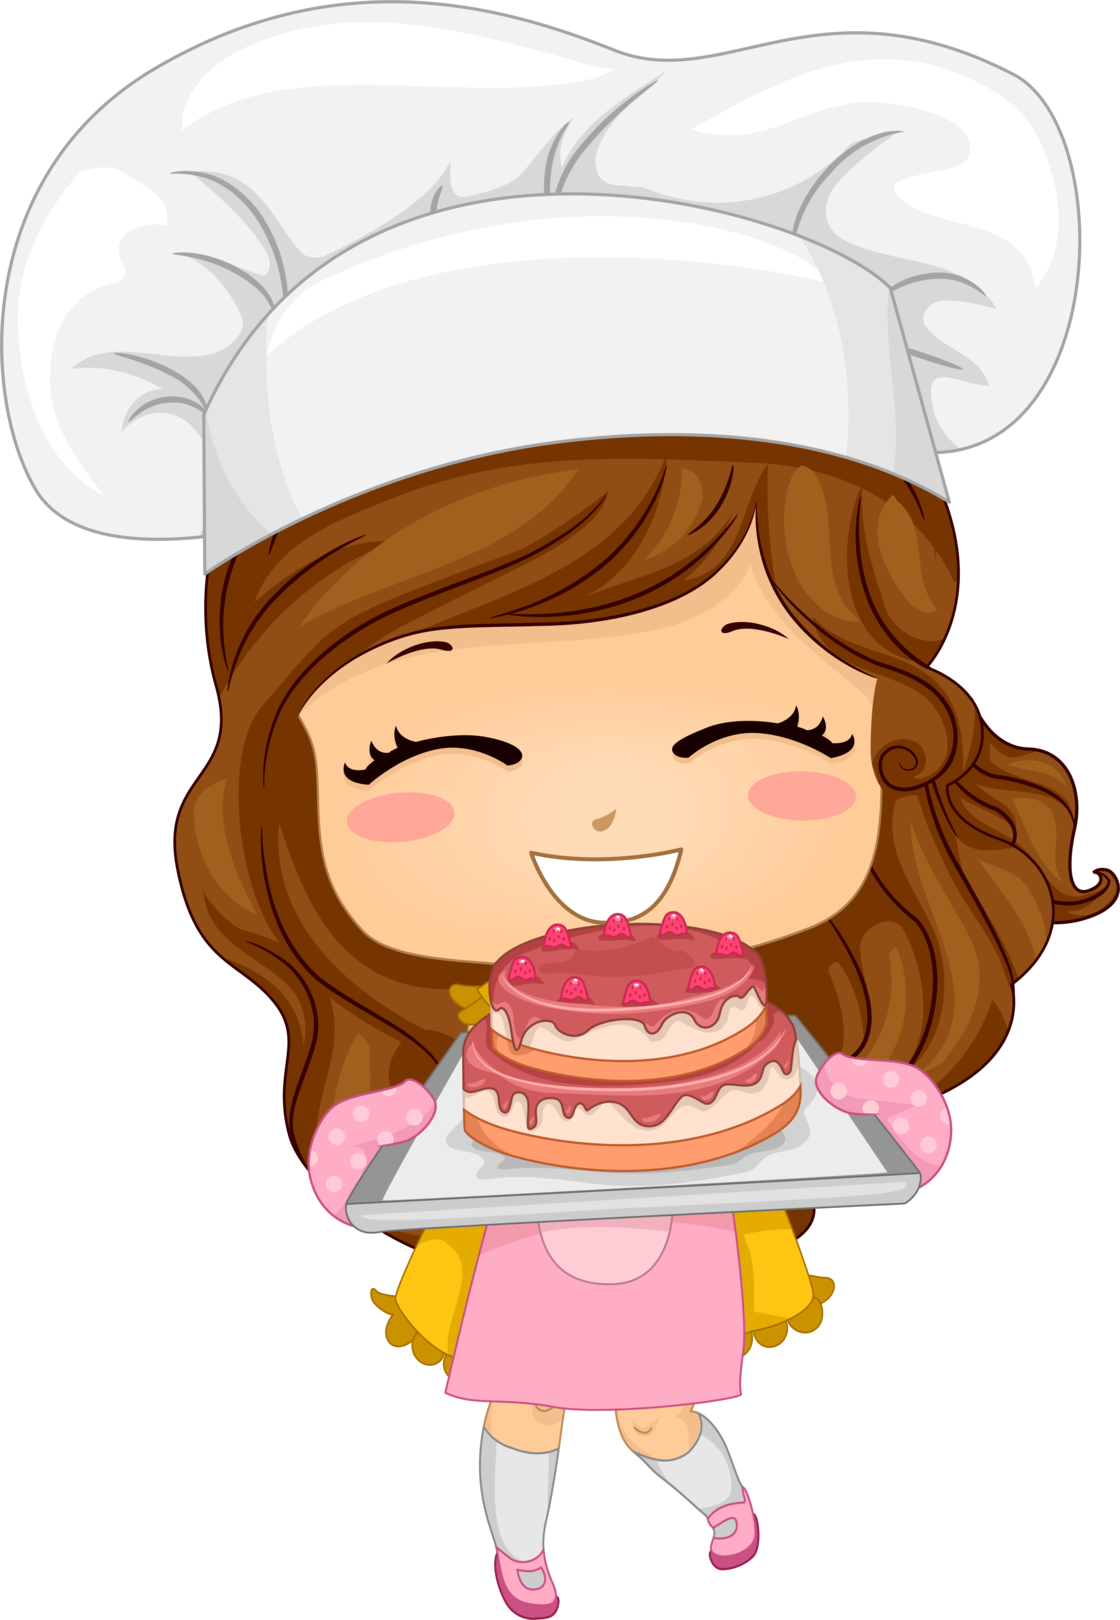 عکس دختر خوشحال سرآشپز با کیک خوشمزه با فرمت png کاملا رایگان 